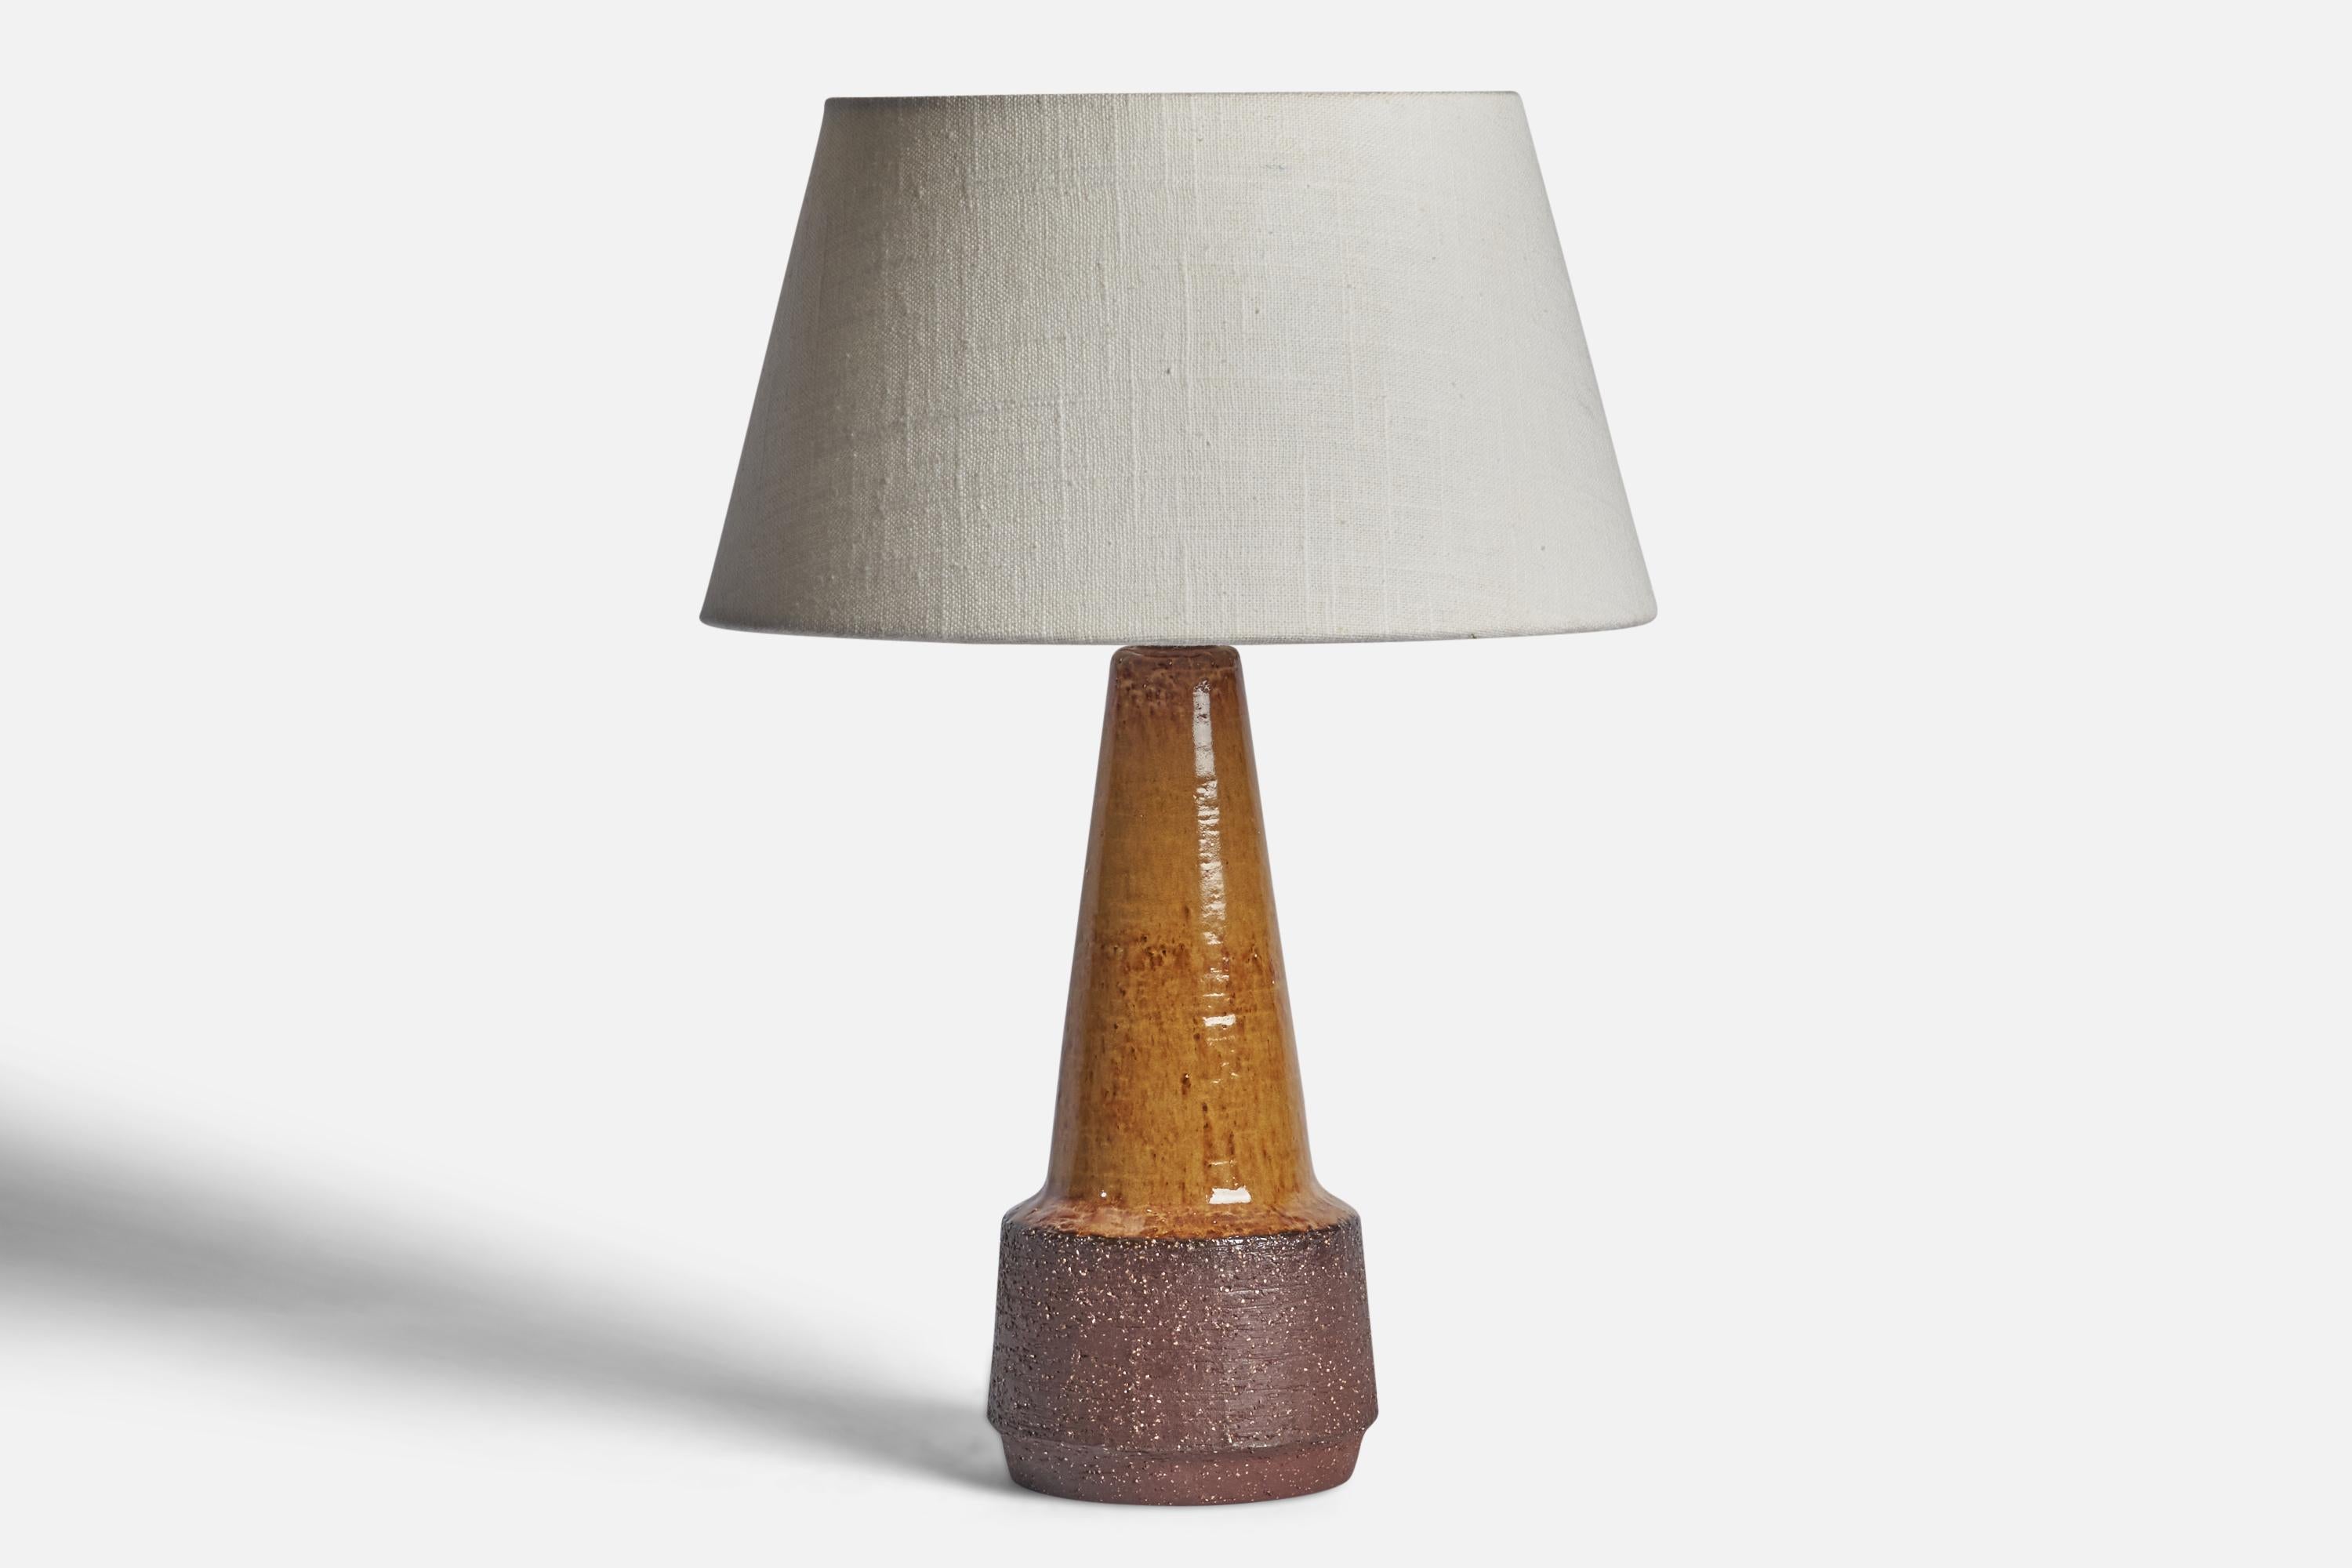 Lampada da tavolo in gres semilucido marrone progettata e prodotta da Michael Andersen, Bornholm, Danimarca, anni '60 circa.

Dimensioni della lampada (pollici): 11,65